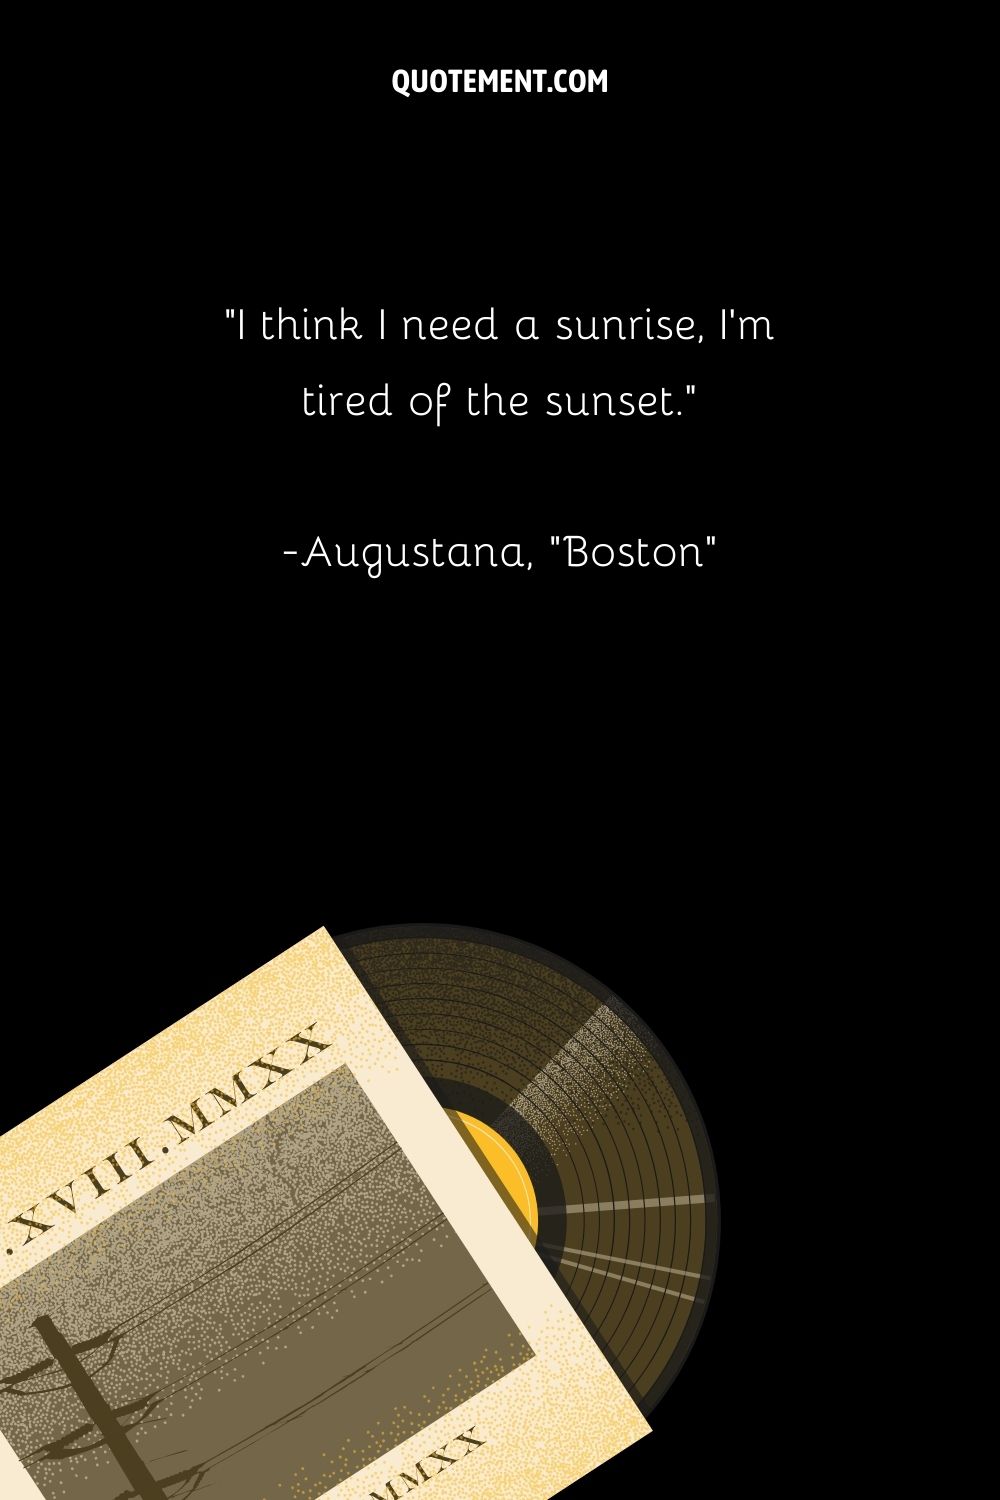 “I think I need a sunrise, I’m tired of the sunset.” — Augustana, “Boston”